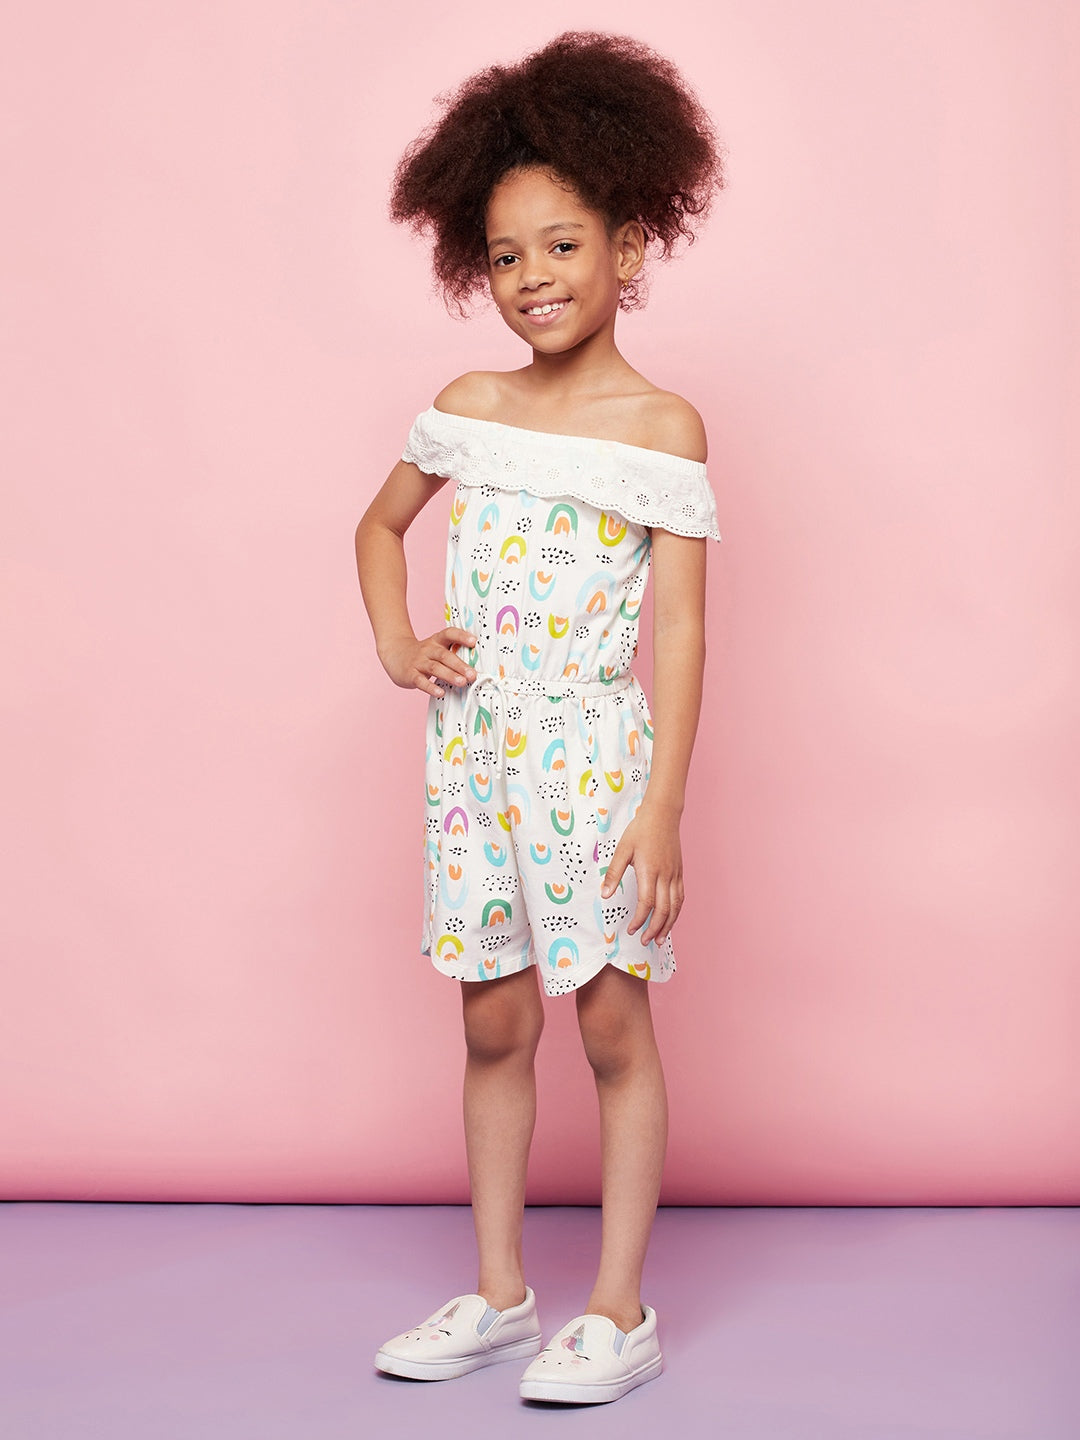 Kid Girl Magical Printed Short Playsuit Dress